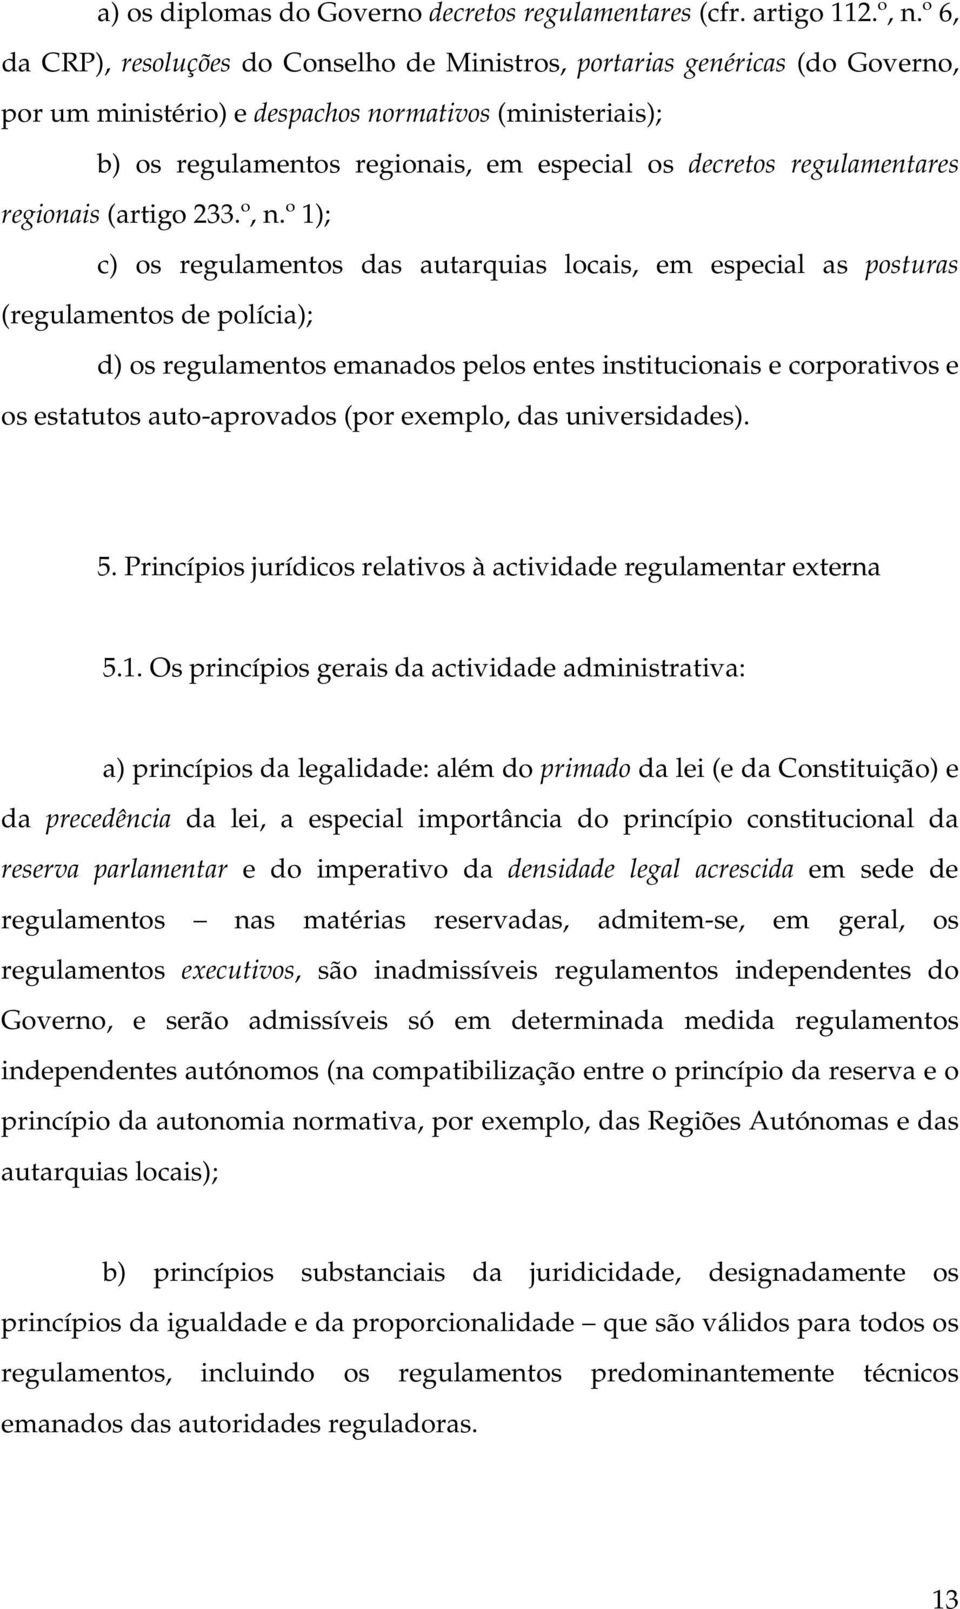 regulamentares regionais (artigo 233.º, n.